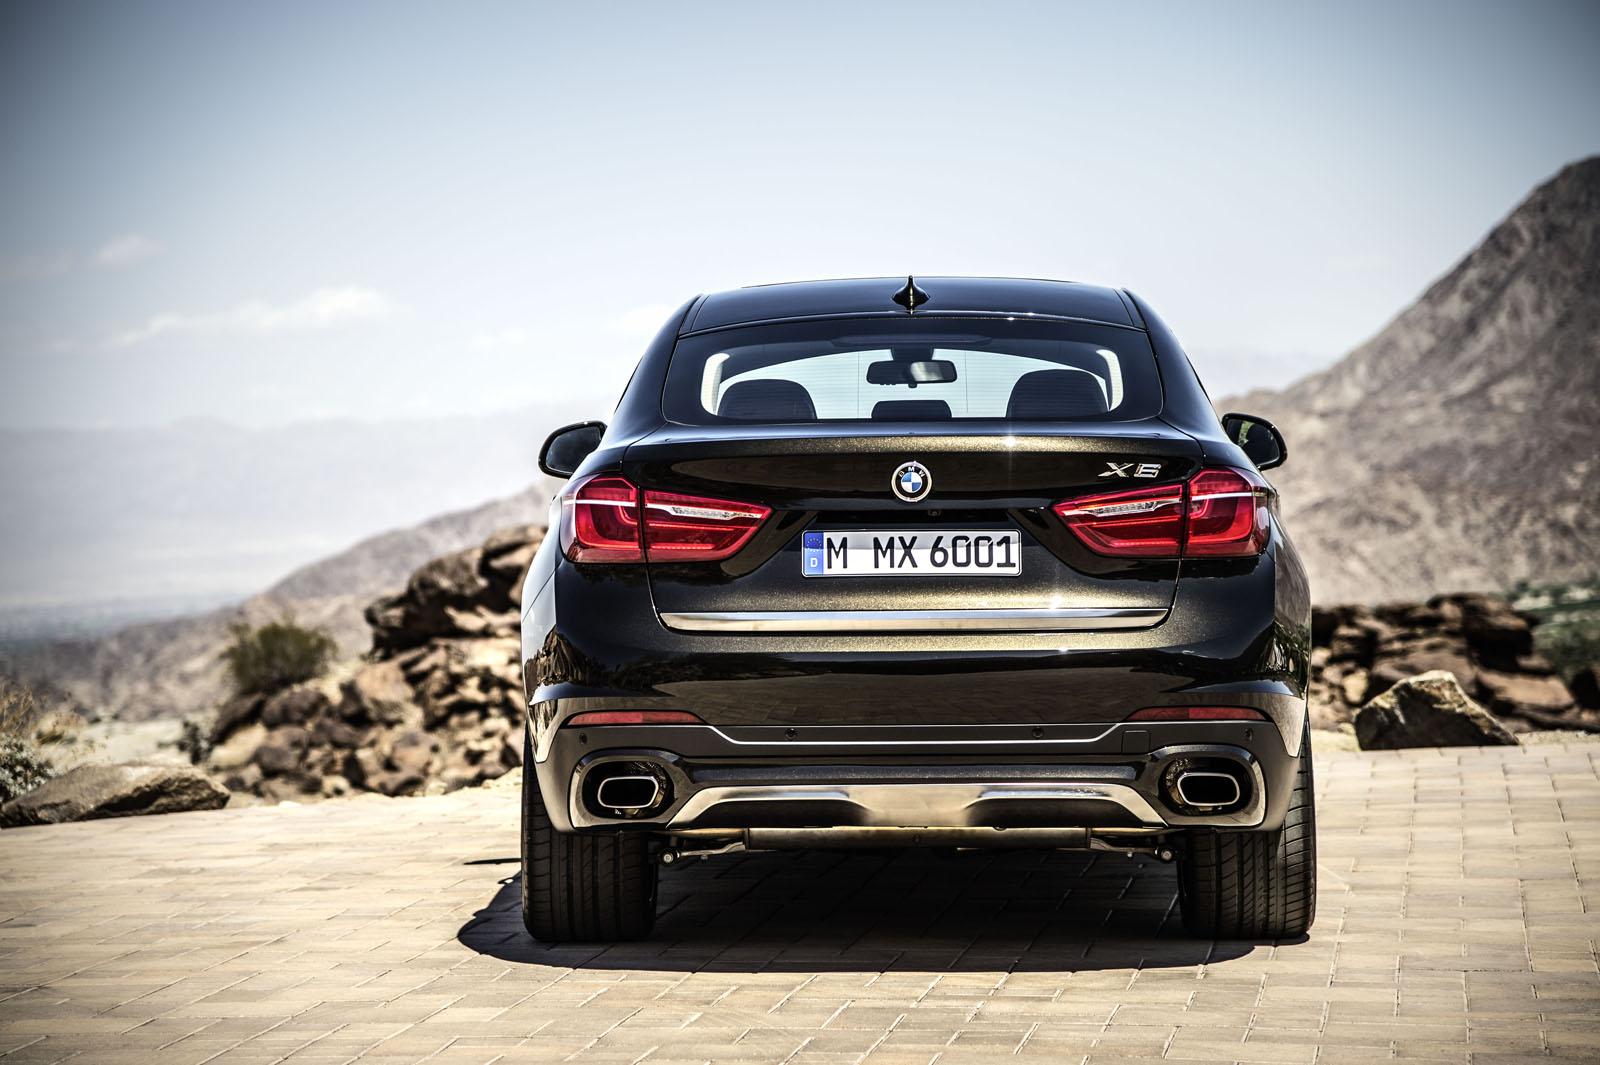 2015-BMW-X6-press-shots-rear